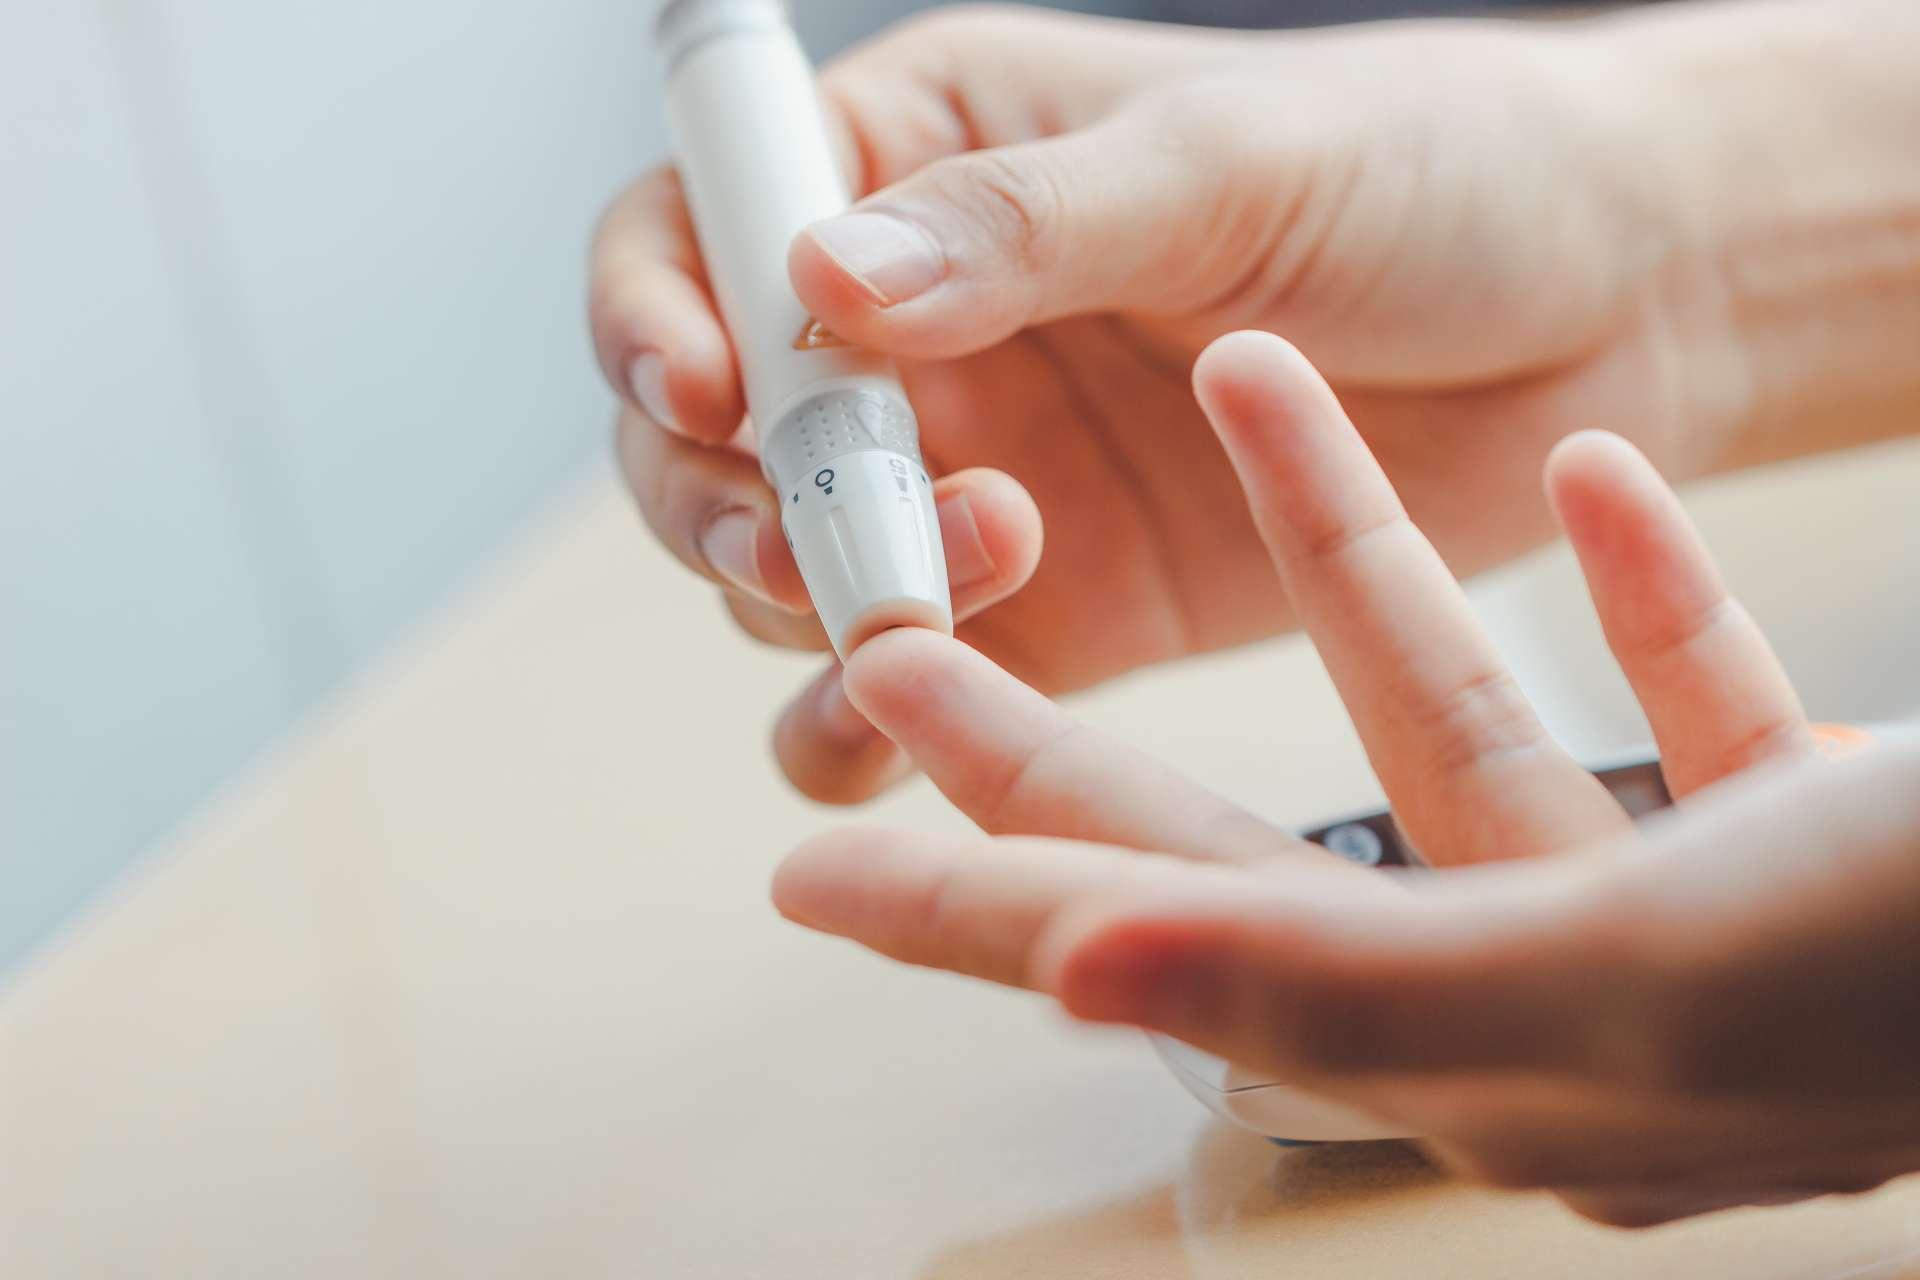 Nahaufnahme von Frauenhänden mit Lanzette am Finger, um den Blutzuckerspiegel mit dem Glukosemeter zu überprüfen, das als Medizin verwendet wird